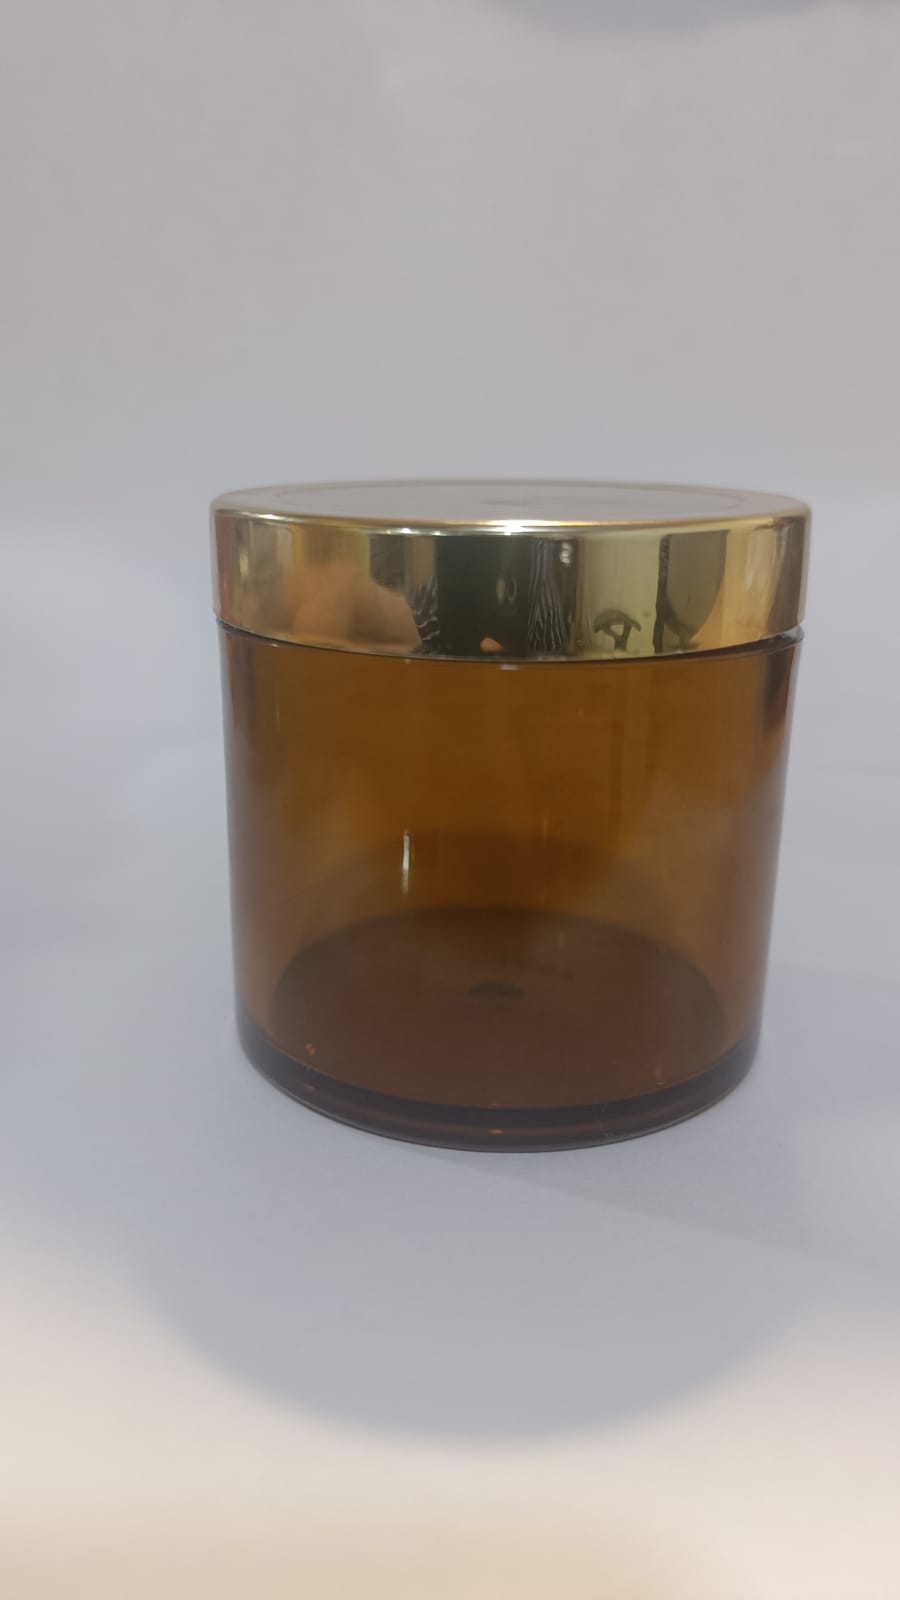 CP7242 100 gm amber san jar with Golden cap